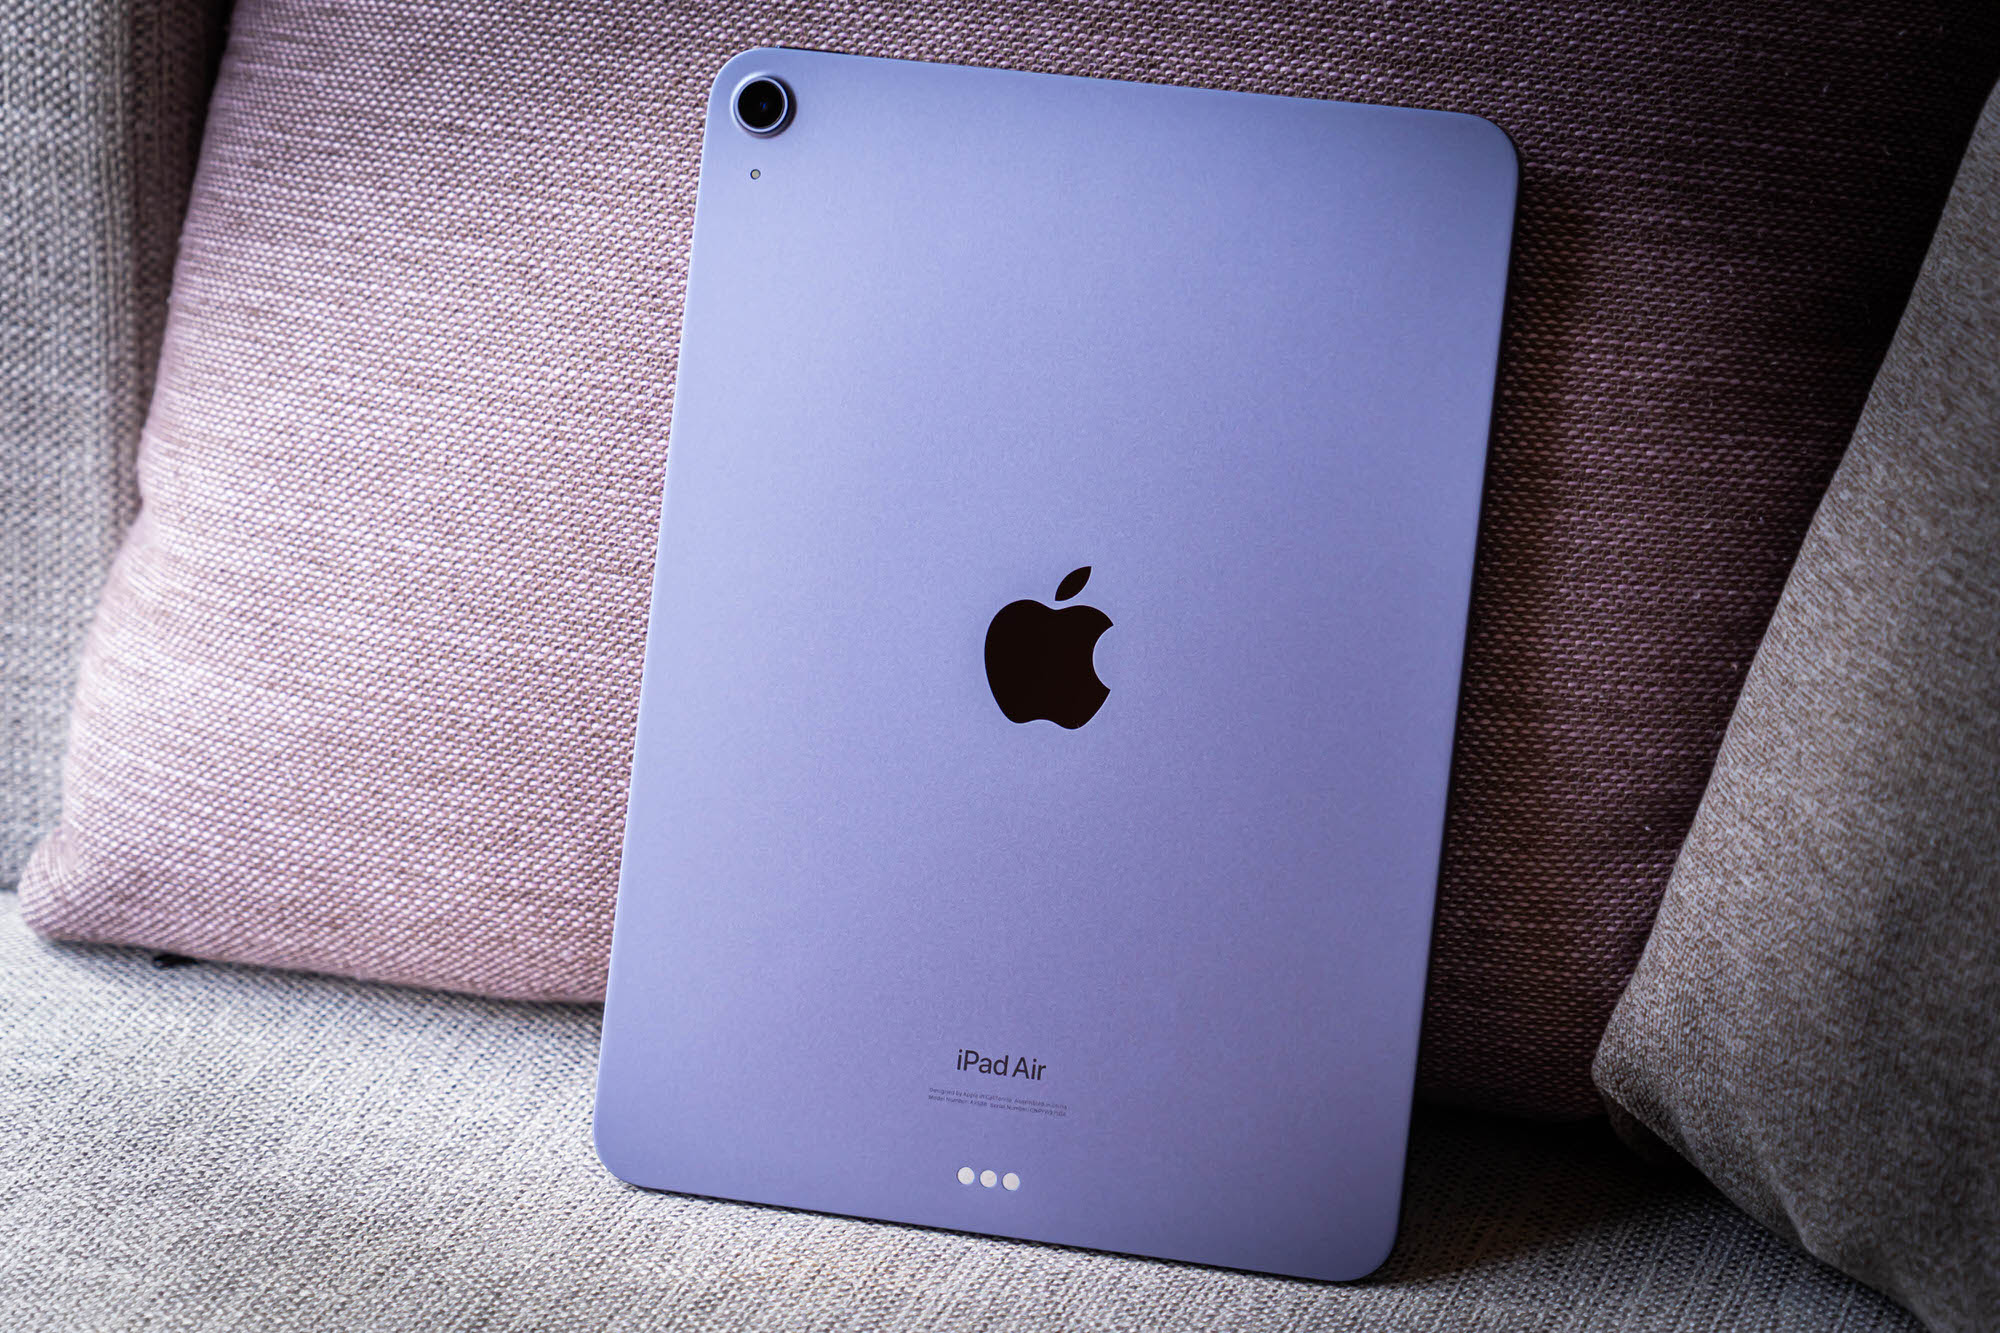 iPad Air レビュー (第5世代)。スペック／大きさいずれもピッタリなタブレット。M1チップ